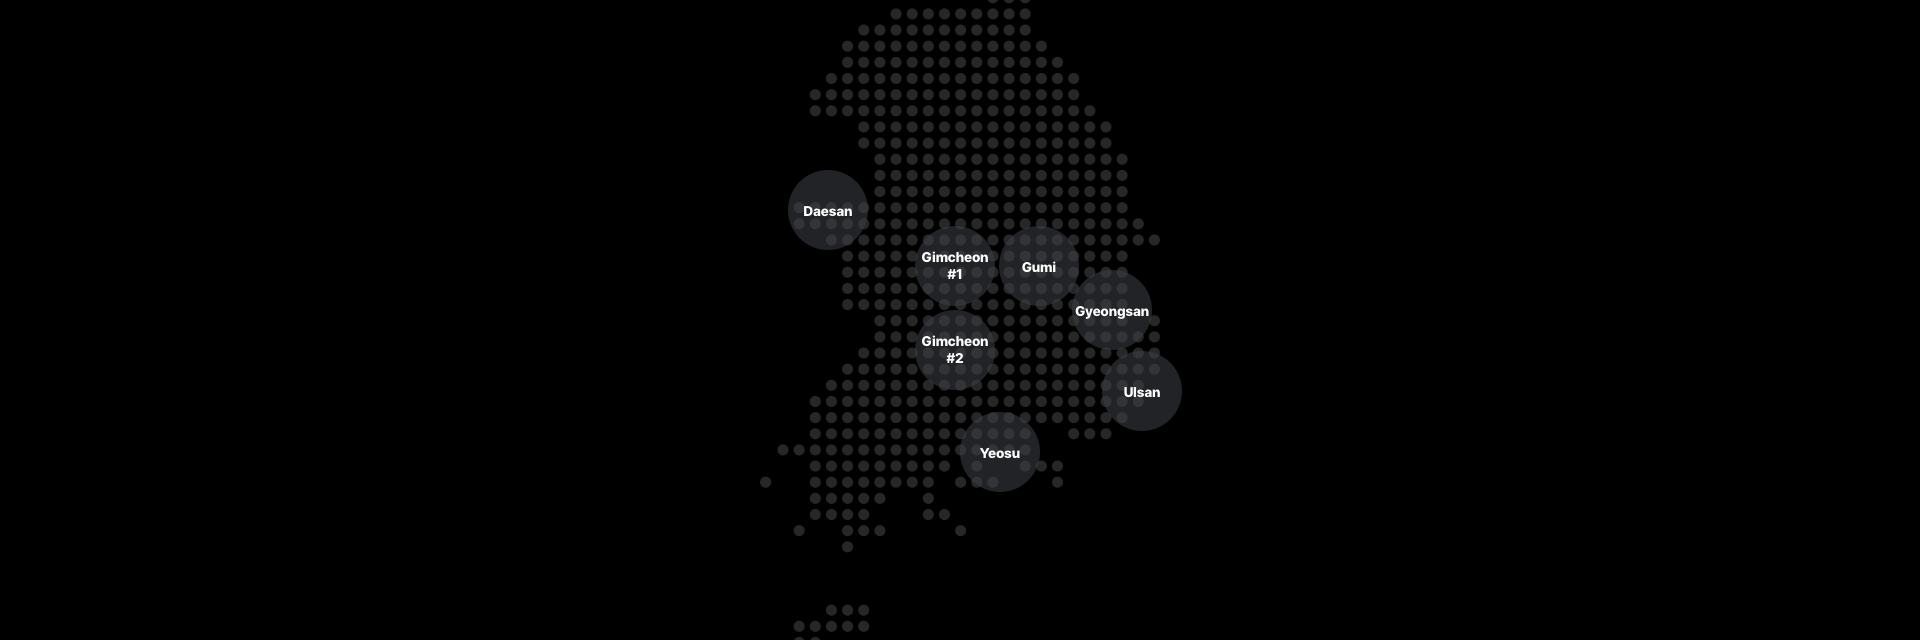 Map of Kolon Industries' domestic business establishments in Daesan, Gimcheon 1, Gumi, Gimcheon 2, Gyeongsan, Yeosu, and Ulsan